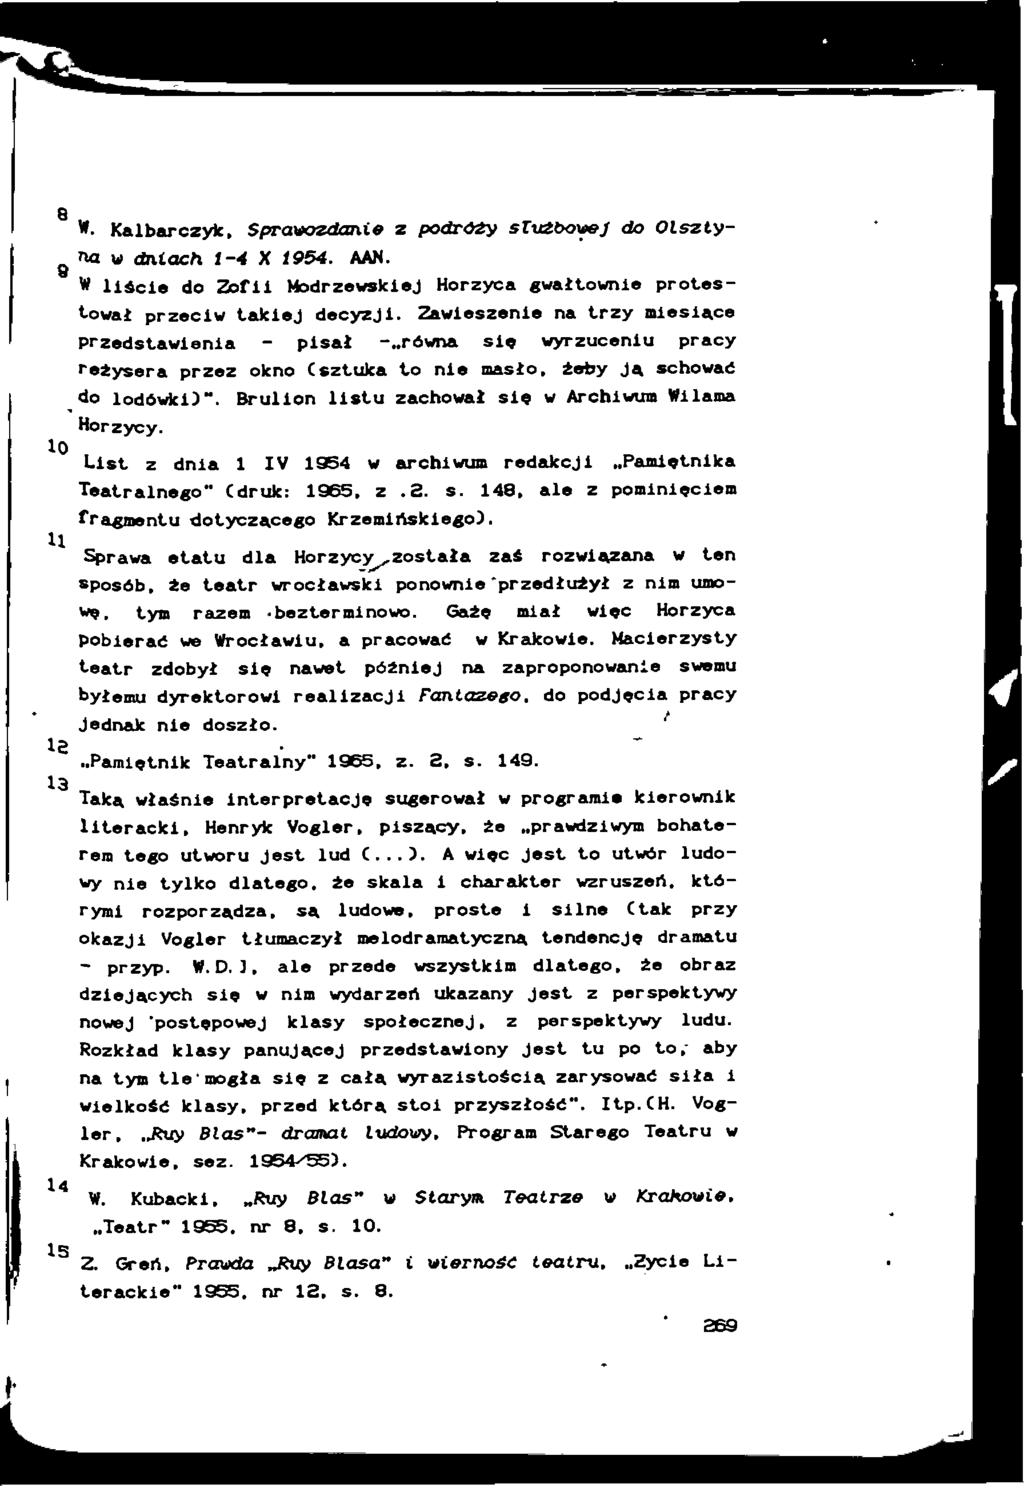 8 9 10 H l 13 W. Kalbarczyk, Sprawozdani# z podrozy służbowej do Olsztyna w dniach t-4 X 1954. AAN. W liście do Zofii Modrzewskiej Horzyca gwałtownie protestował przeciw takiej decyzji.